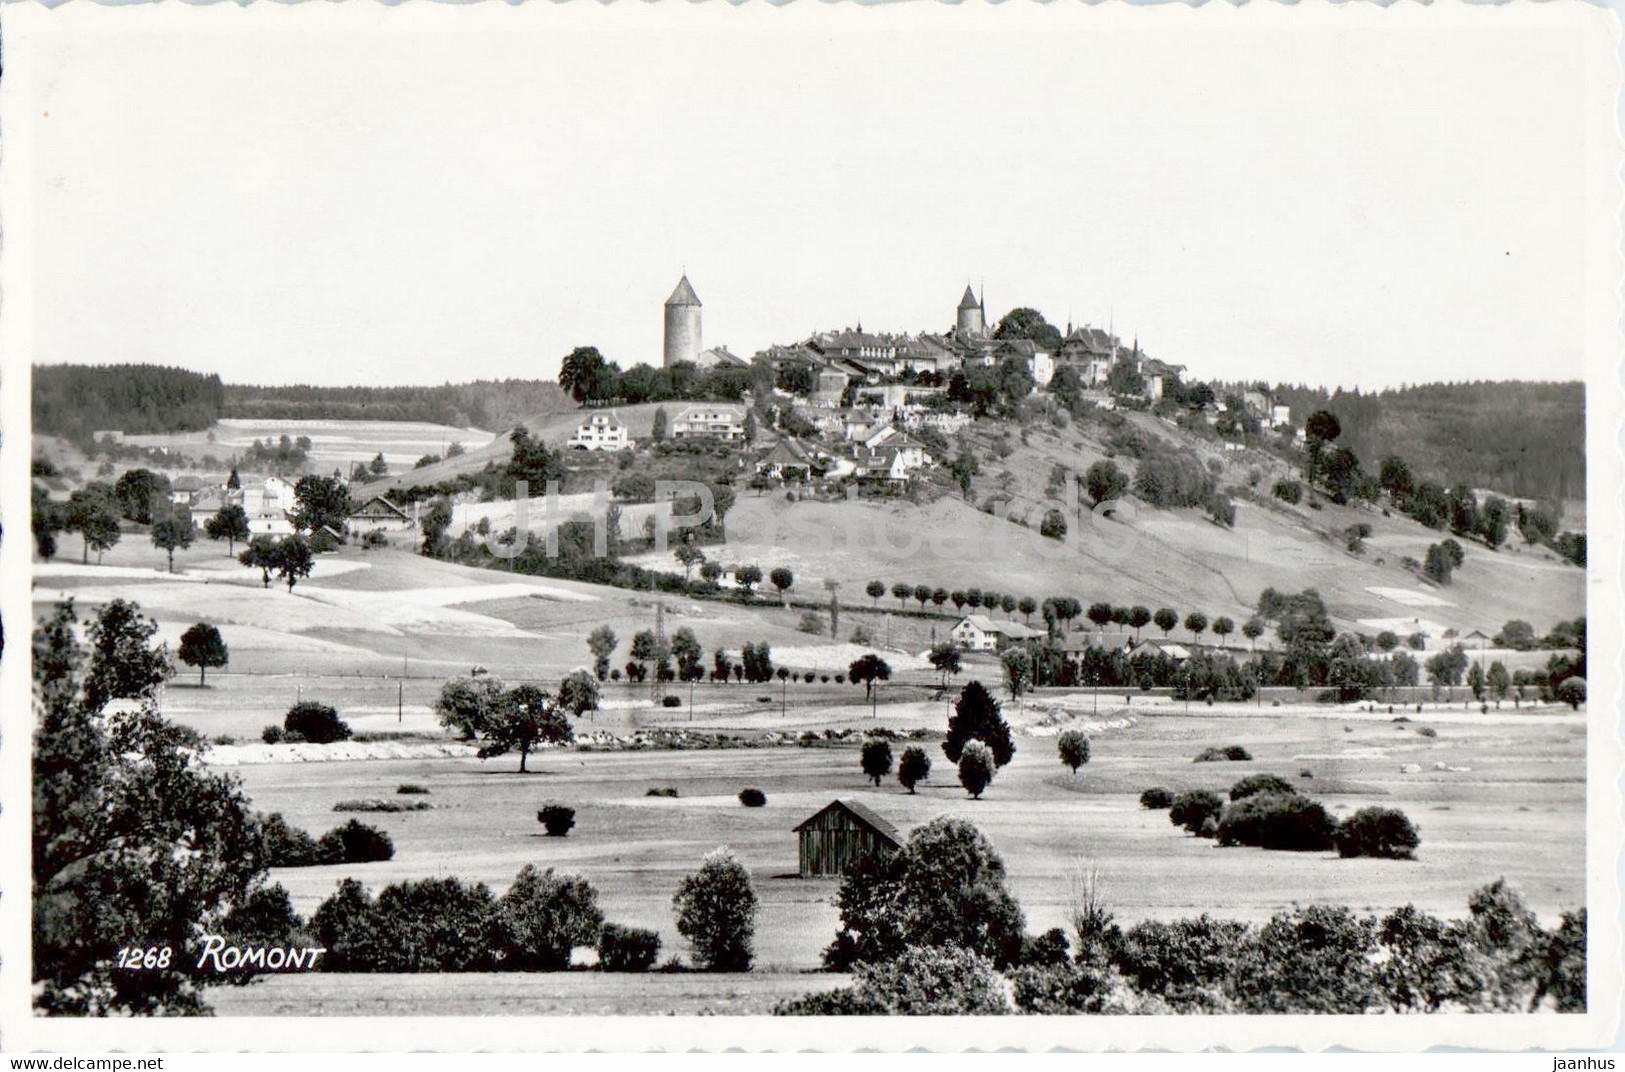 Romont - 1268 - Old Postcard - 1946 - Switzerland - Used - Romont